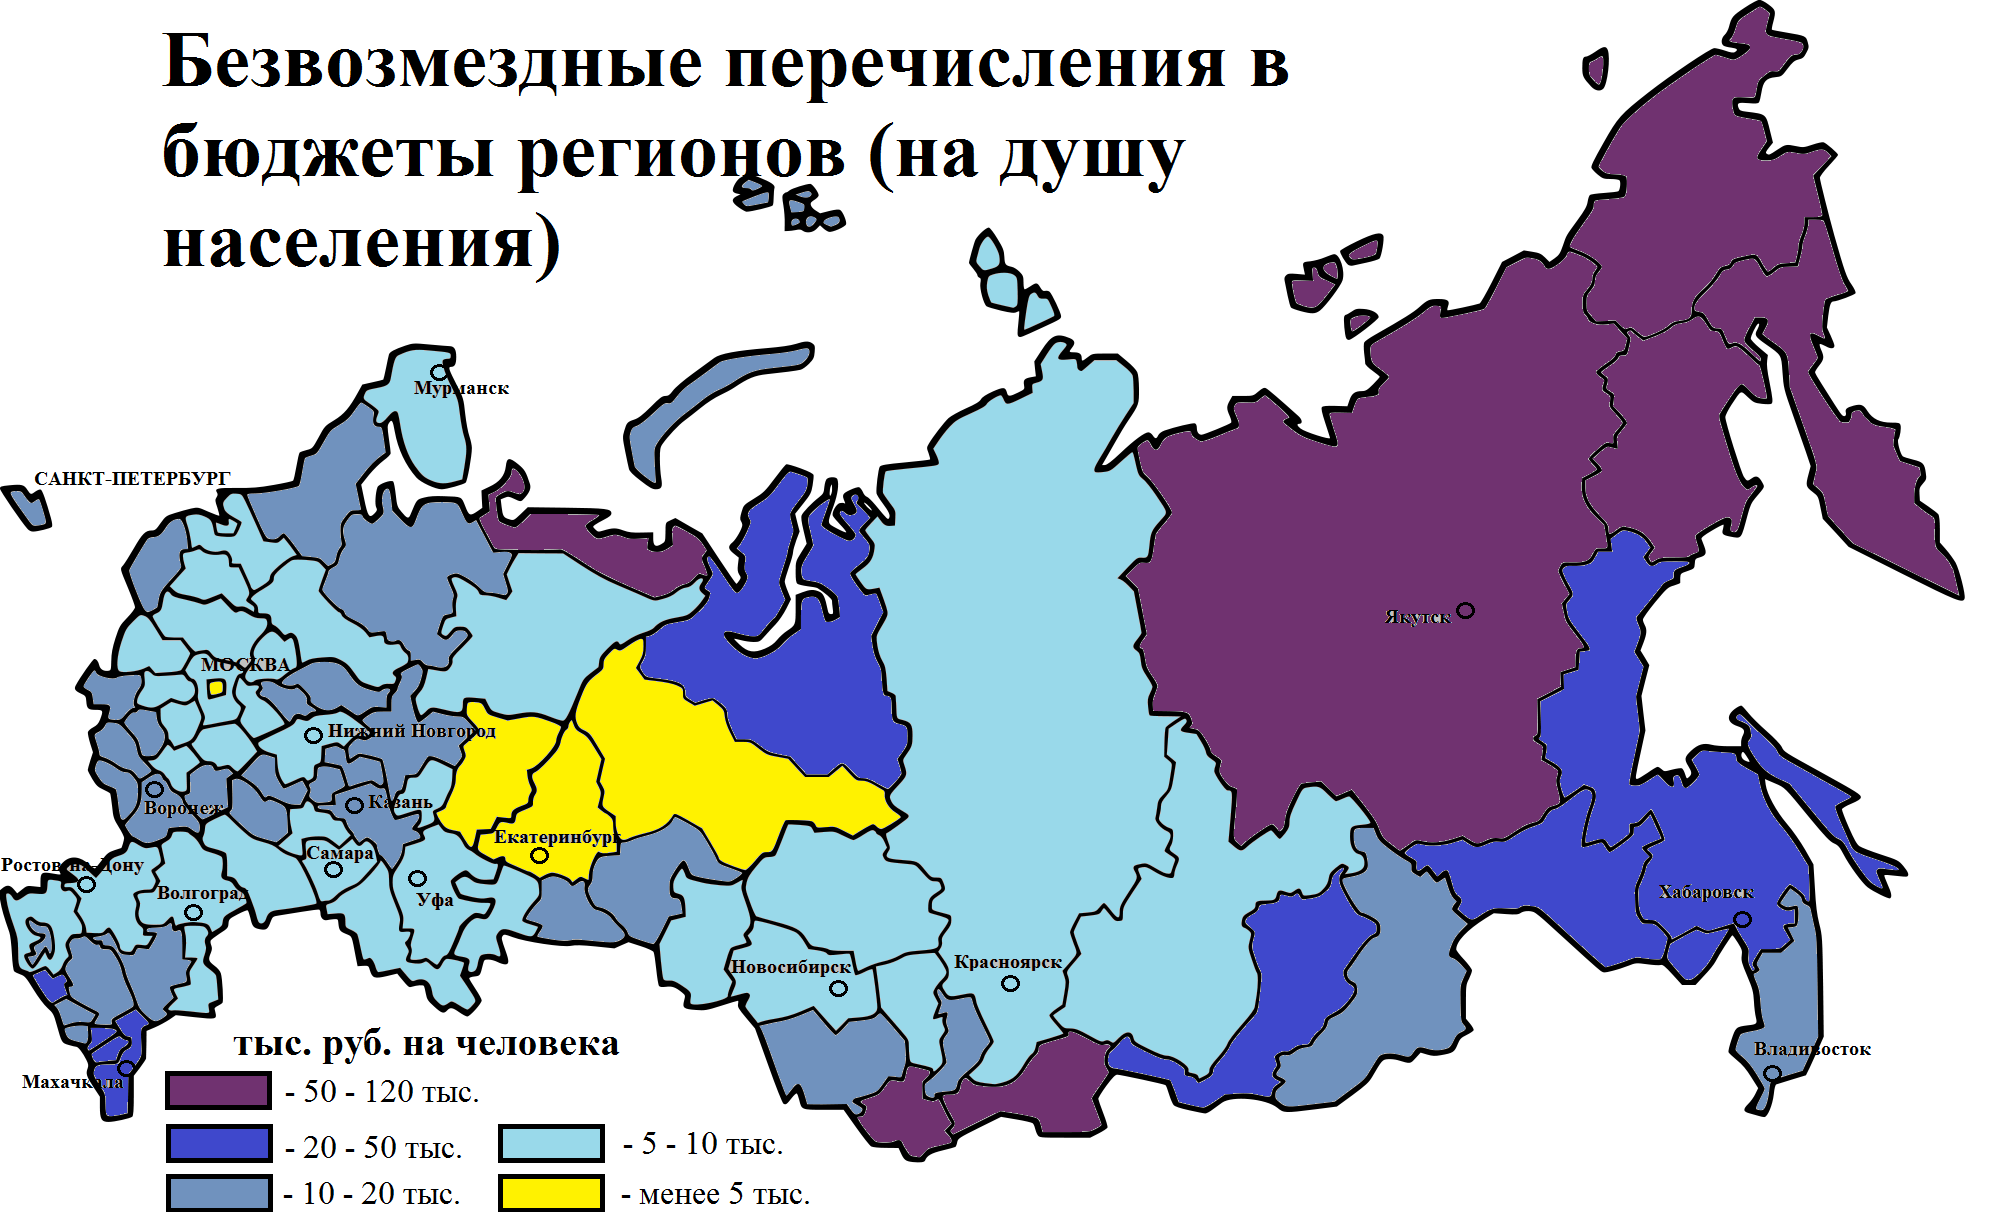 Карта безвозмездных перечислений в расчёте на душу населения в бюджеты регионов России на 2013-й год